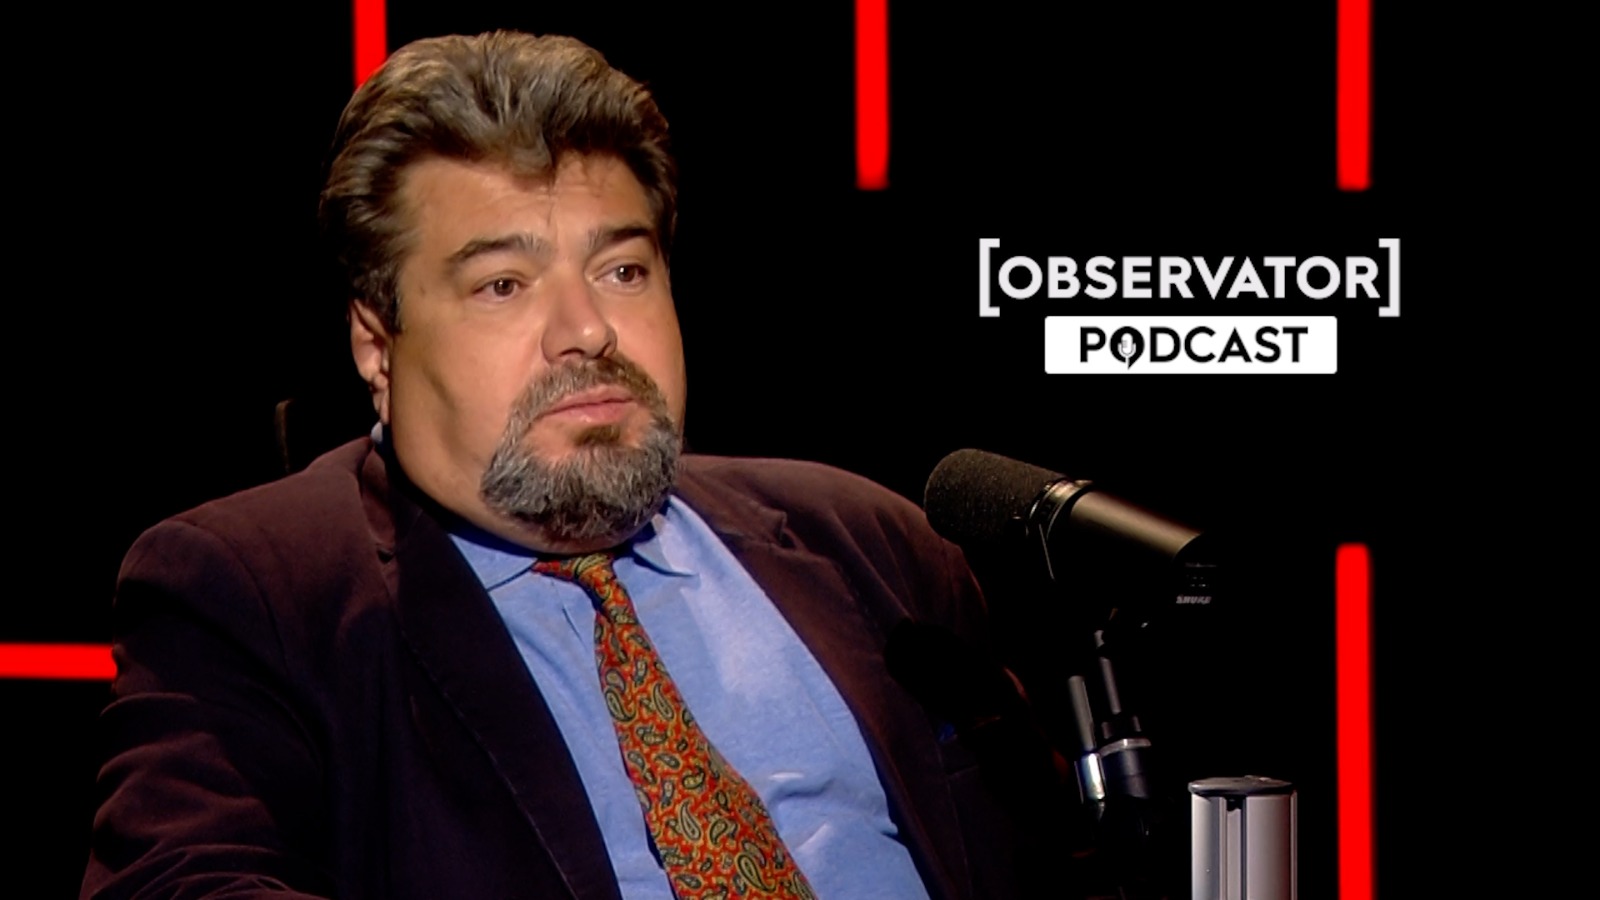 Podcast | Observator: Episodul 17 - Andrei Țăranu